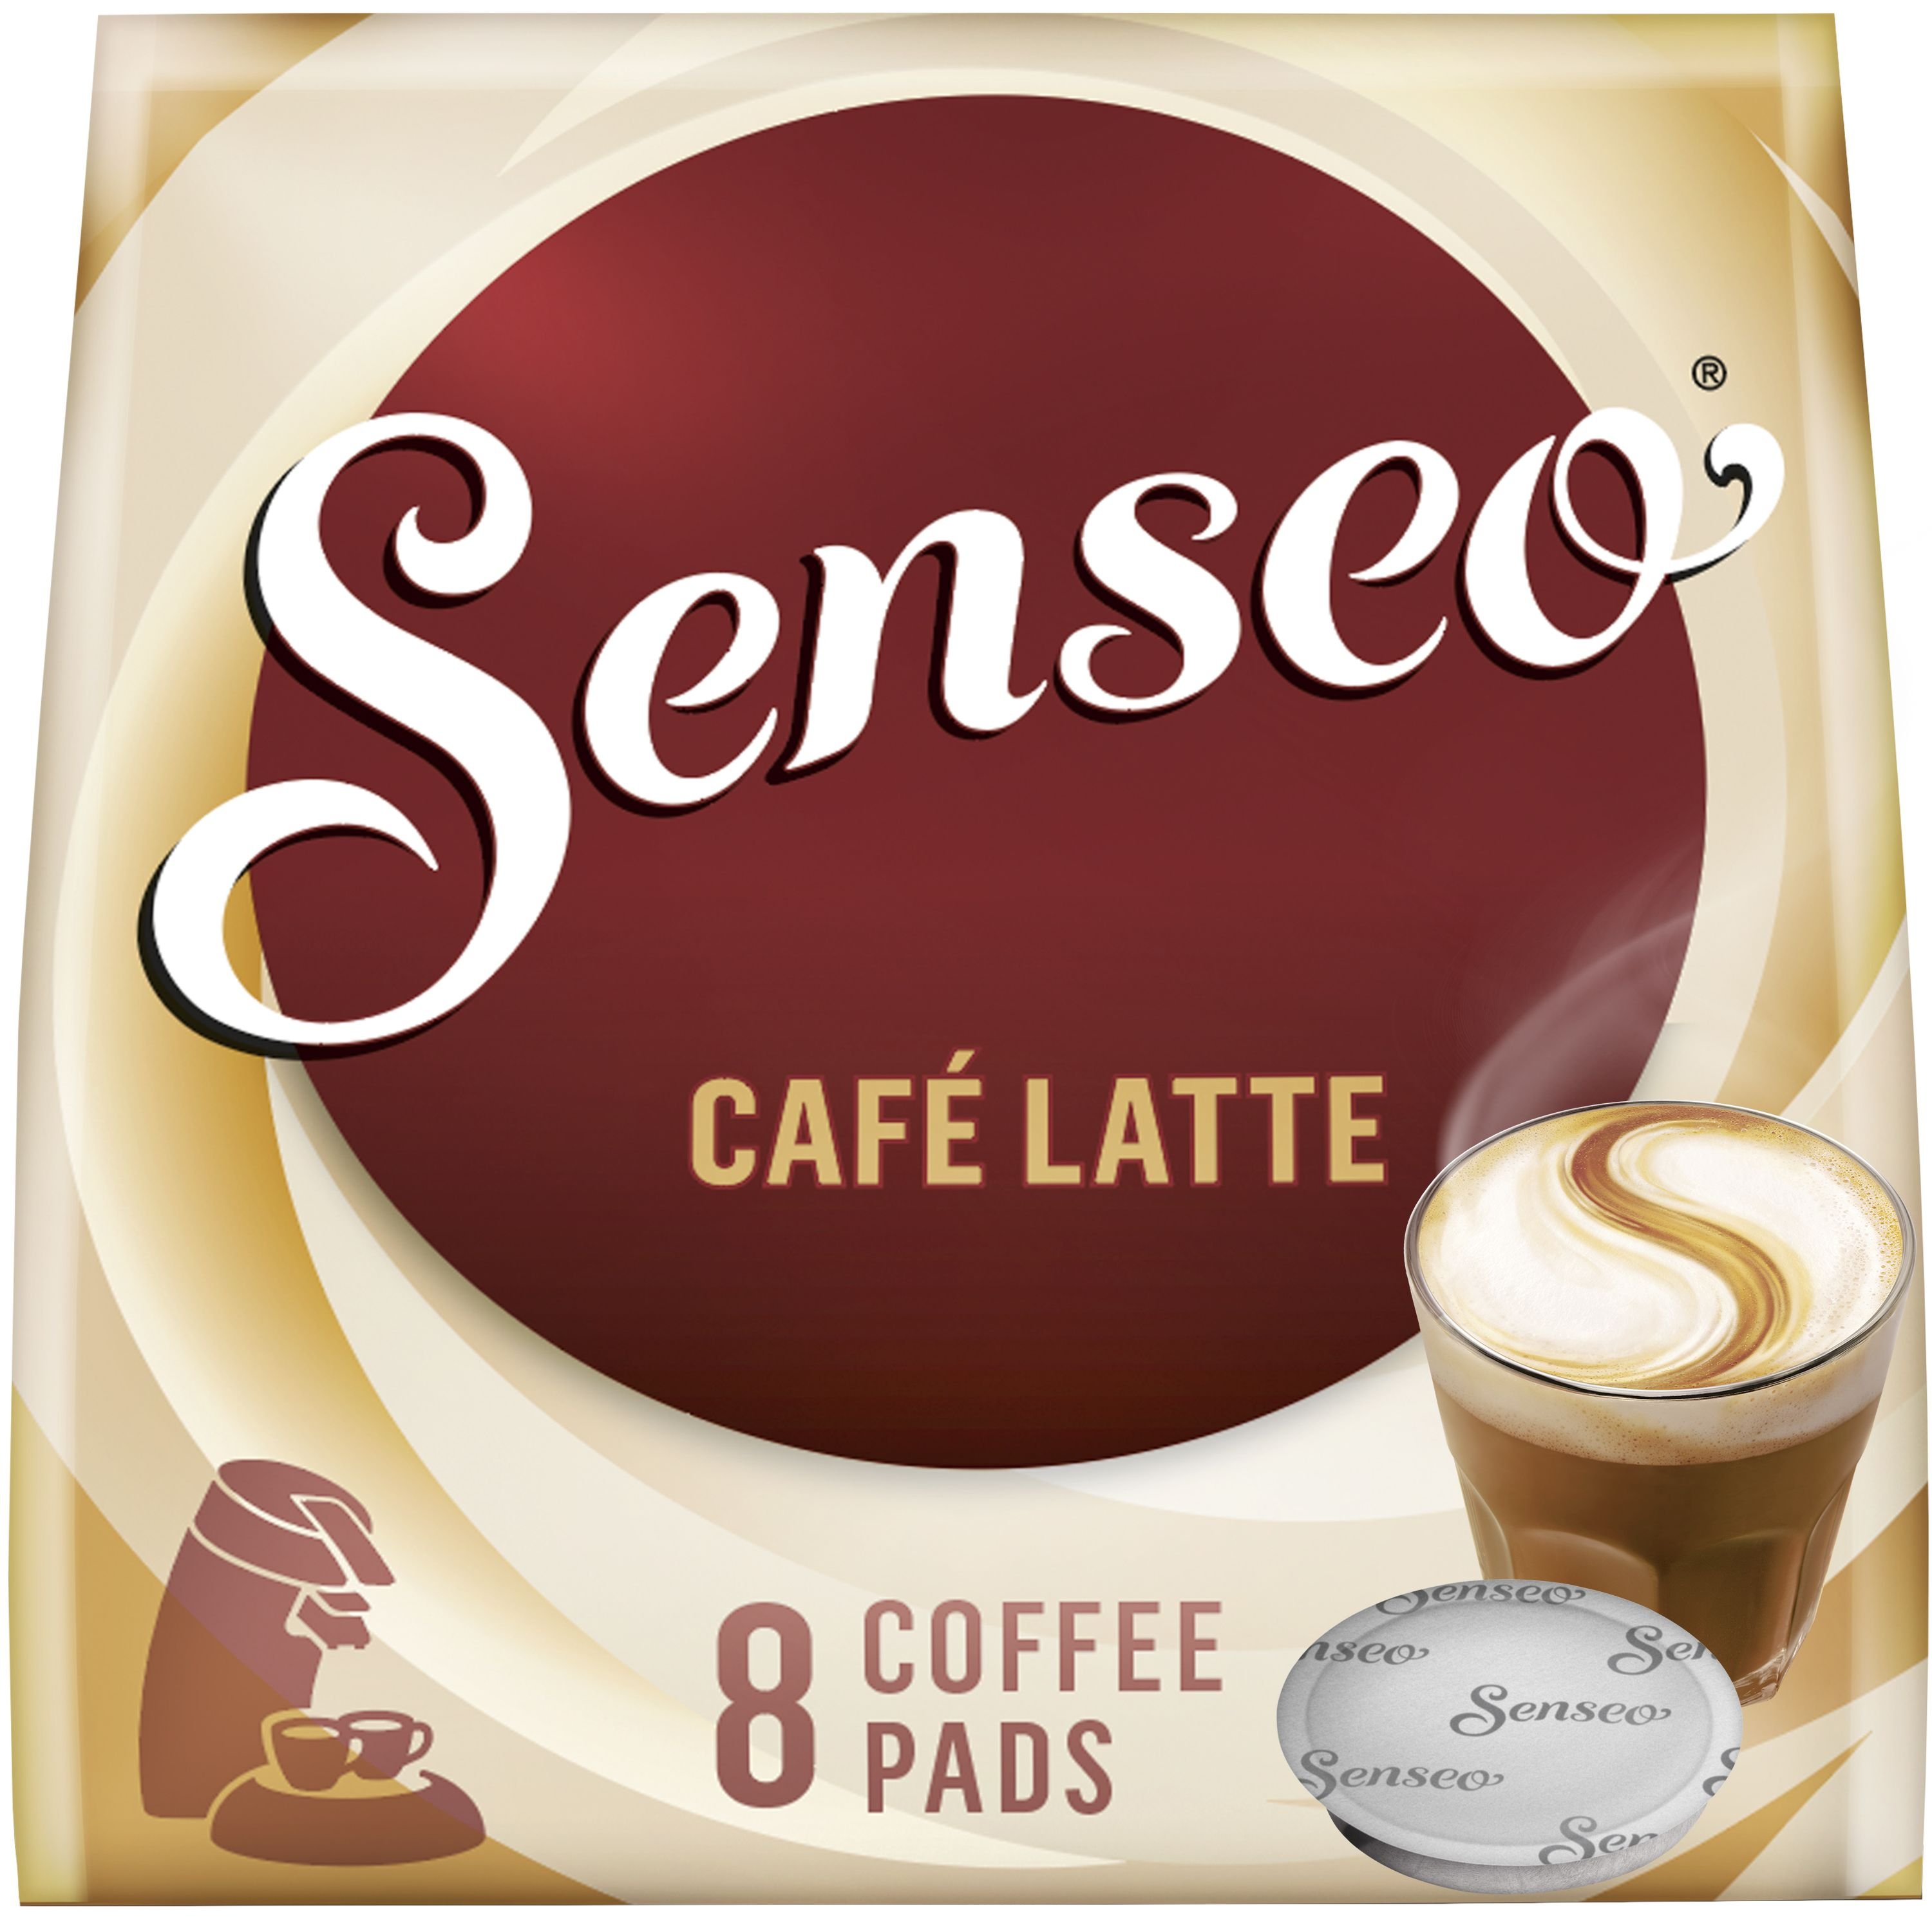 Senseo Cappuccino - 8 dosettes - Café Dosette